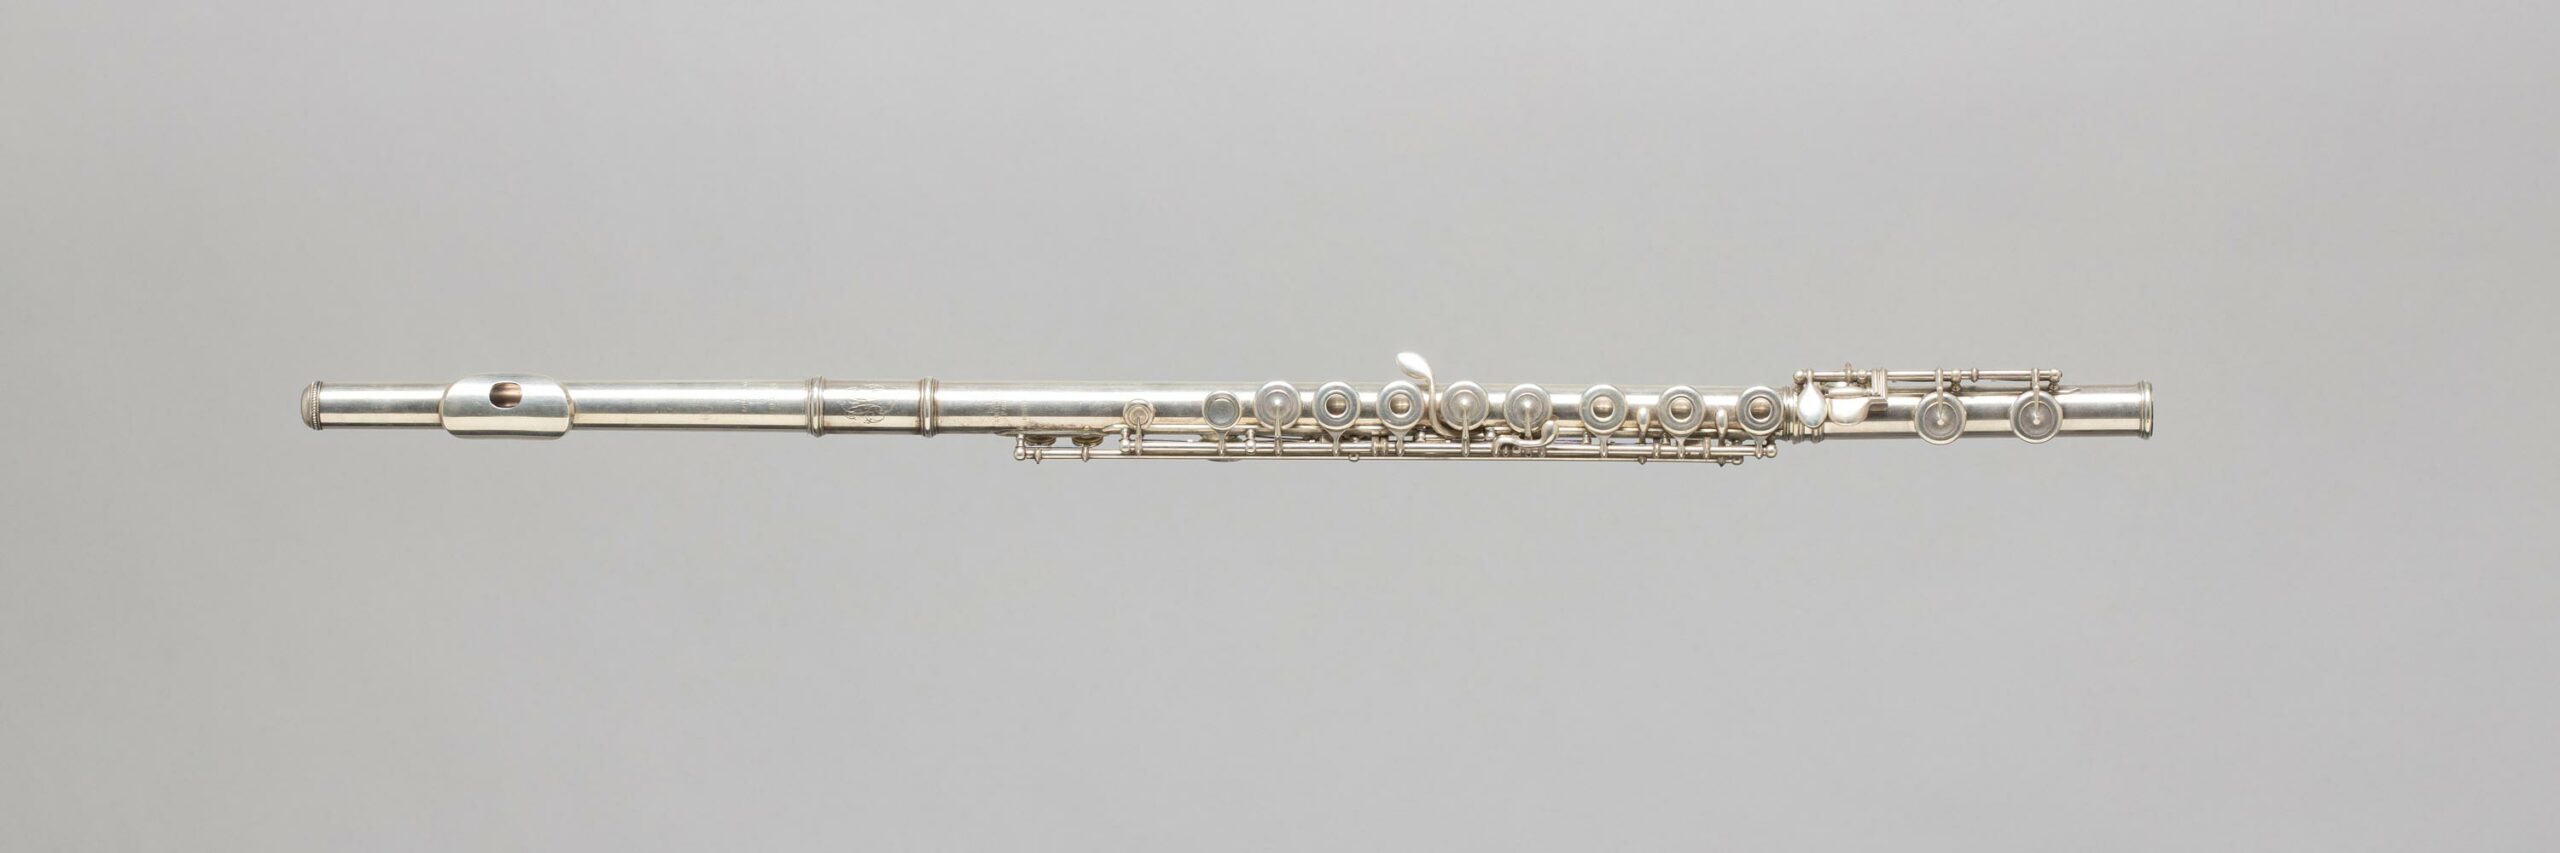 Flûte en métal argenté, système Boehm, estampillée Louis LOT Instrument mis en vente par Vichy Enchères le 5 novembre 2022 © C. Darbelet